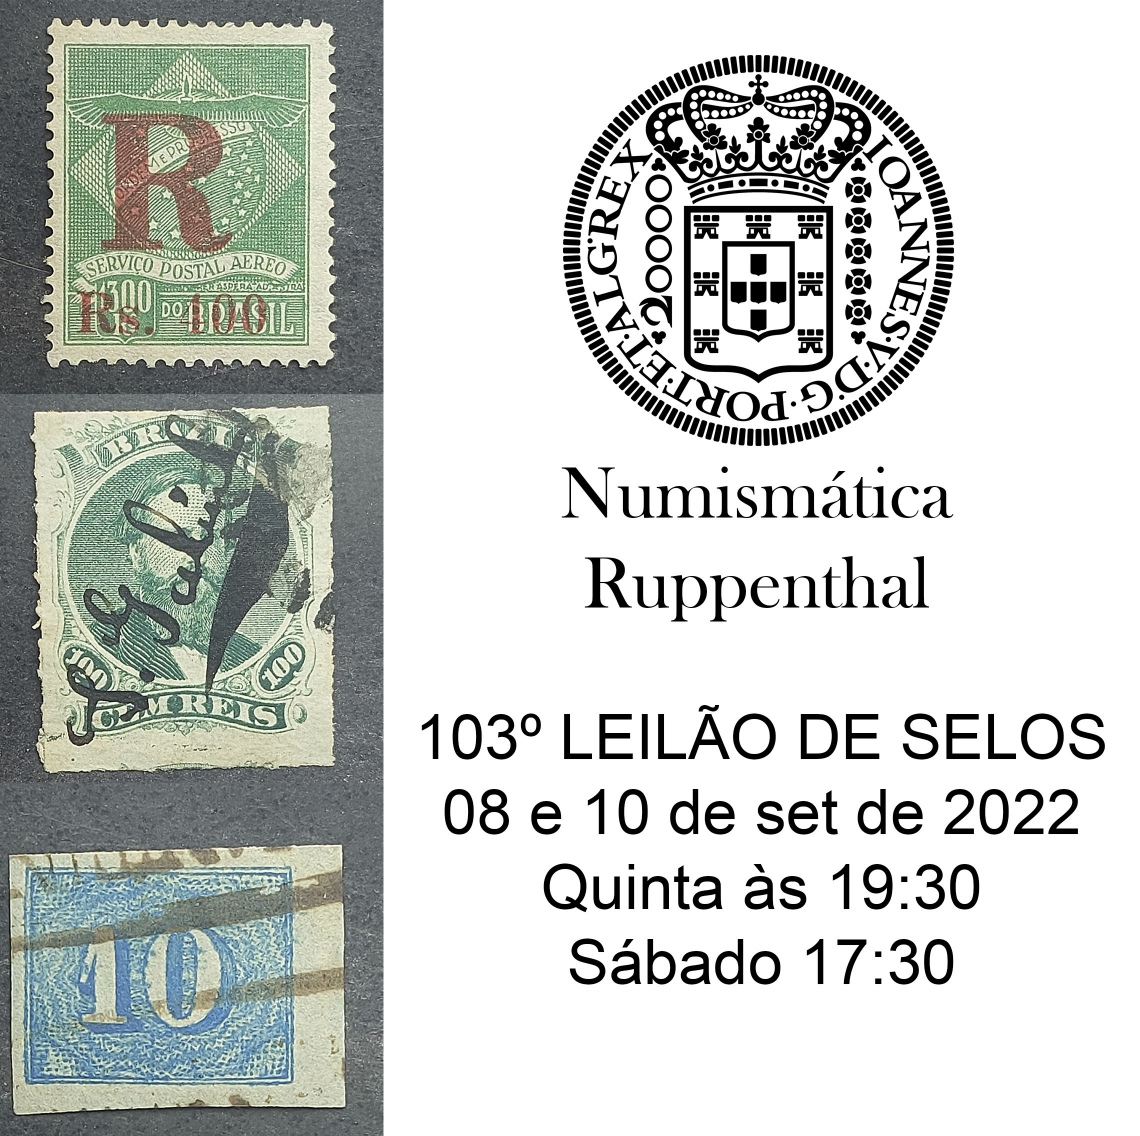 103º LEILÃO DE FILATELIA E NUMISMÁTICA - Numismática Ruppenthal